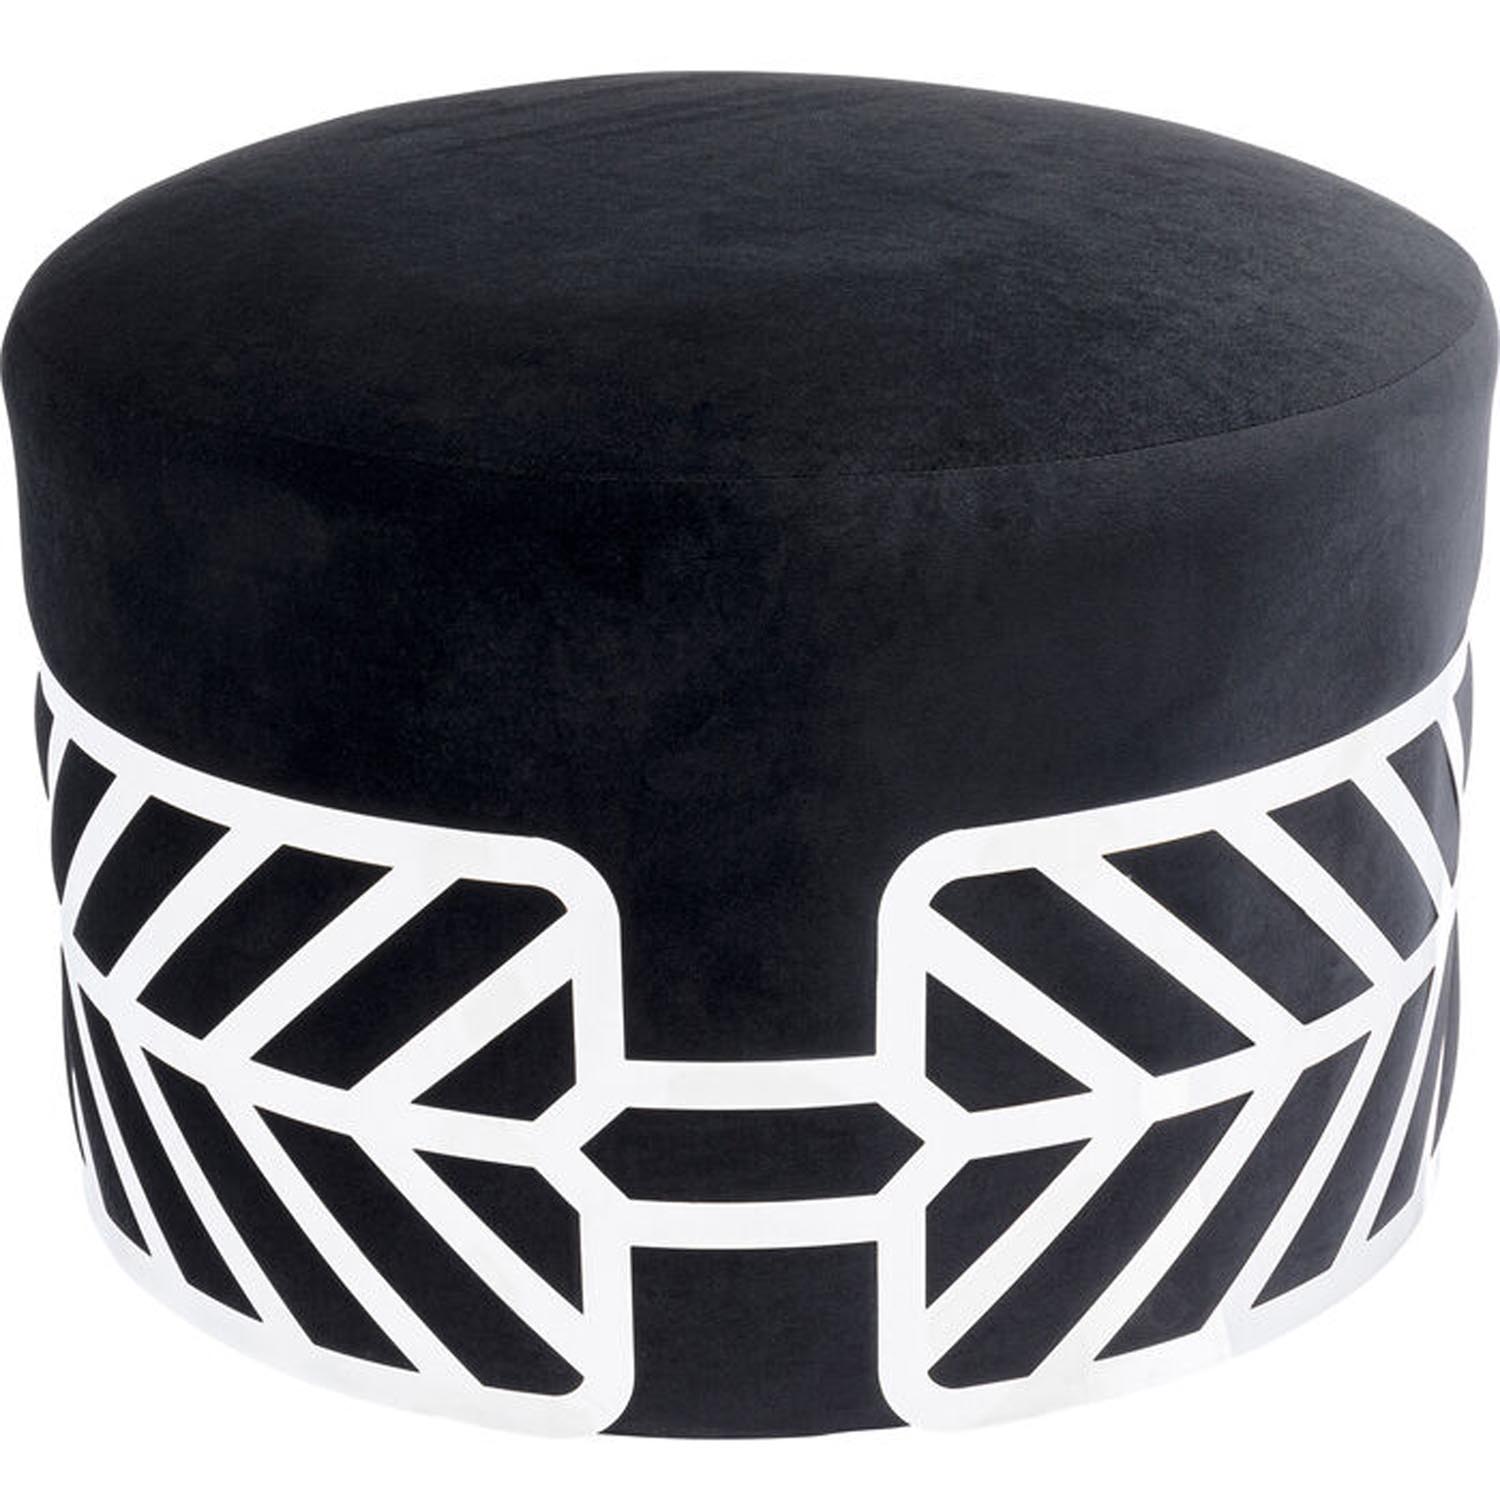 KARE DESIGN Jenna Black taburet, rund - sort polyester og stål (Ø61)